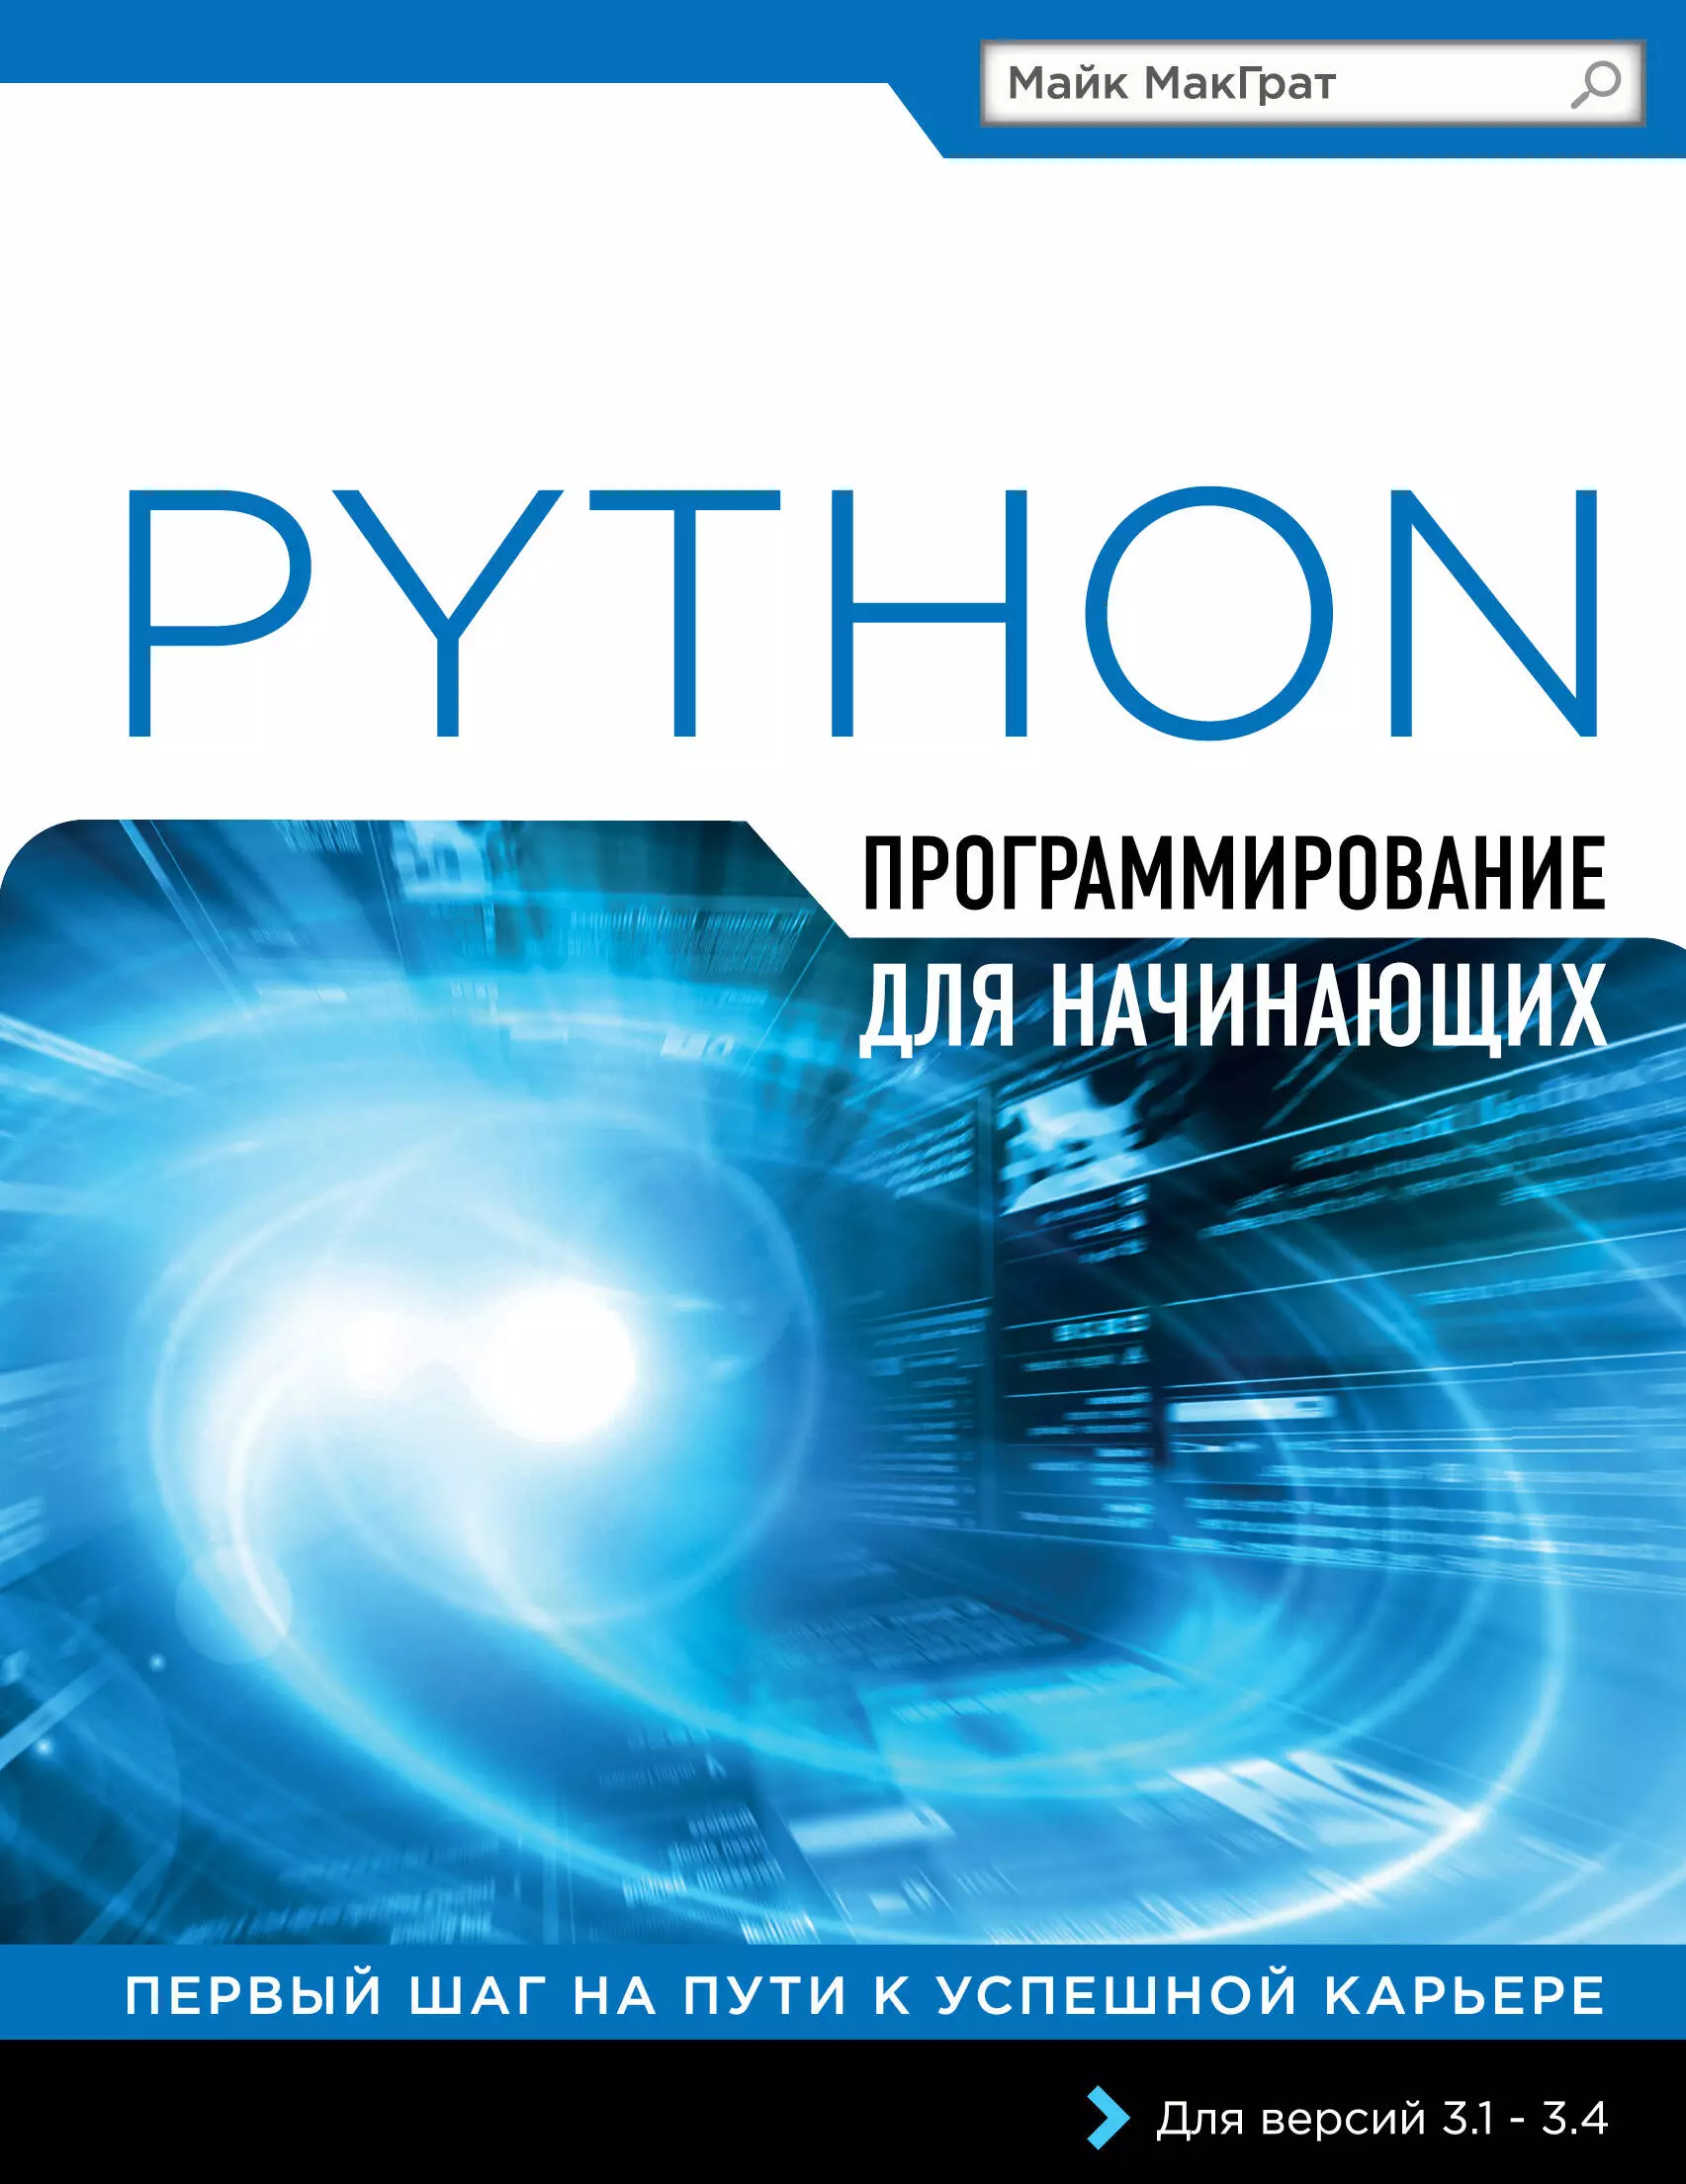 МакГрат Майк - Программирование на Python для начинающих